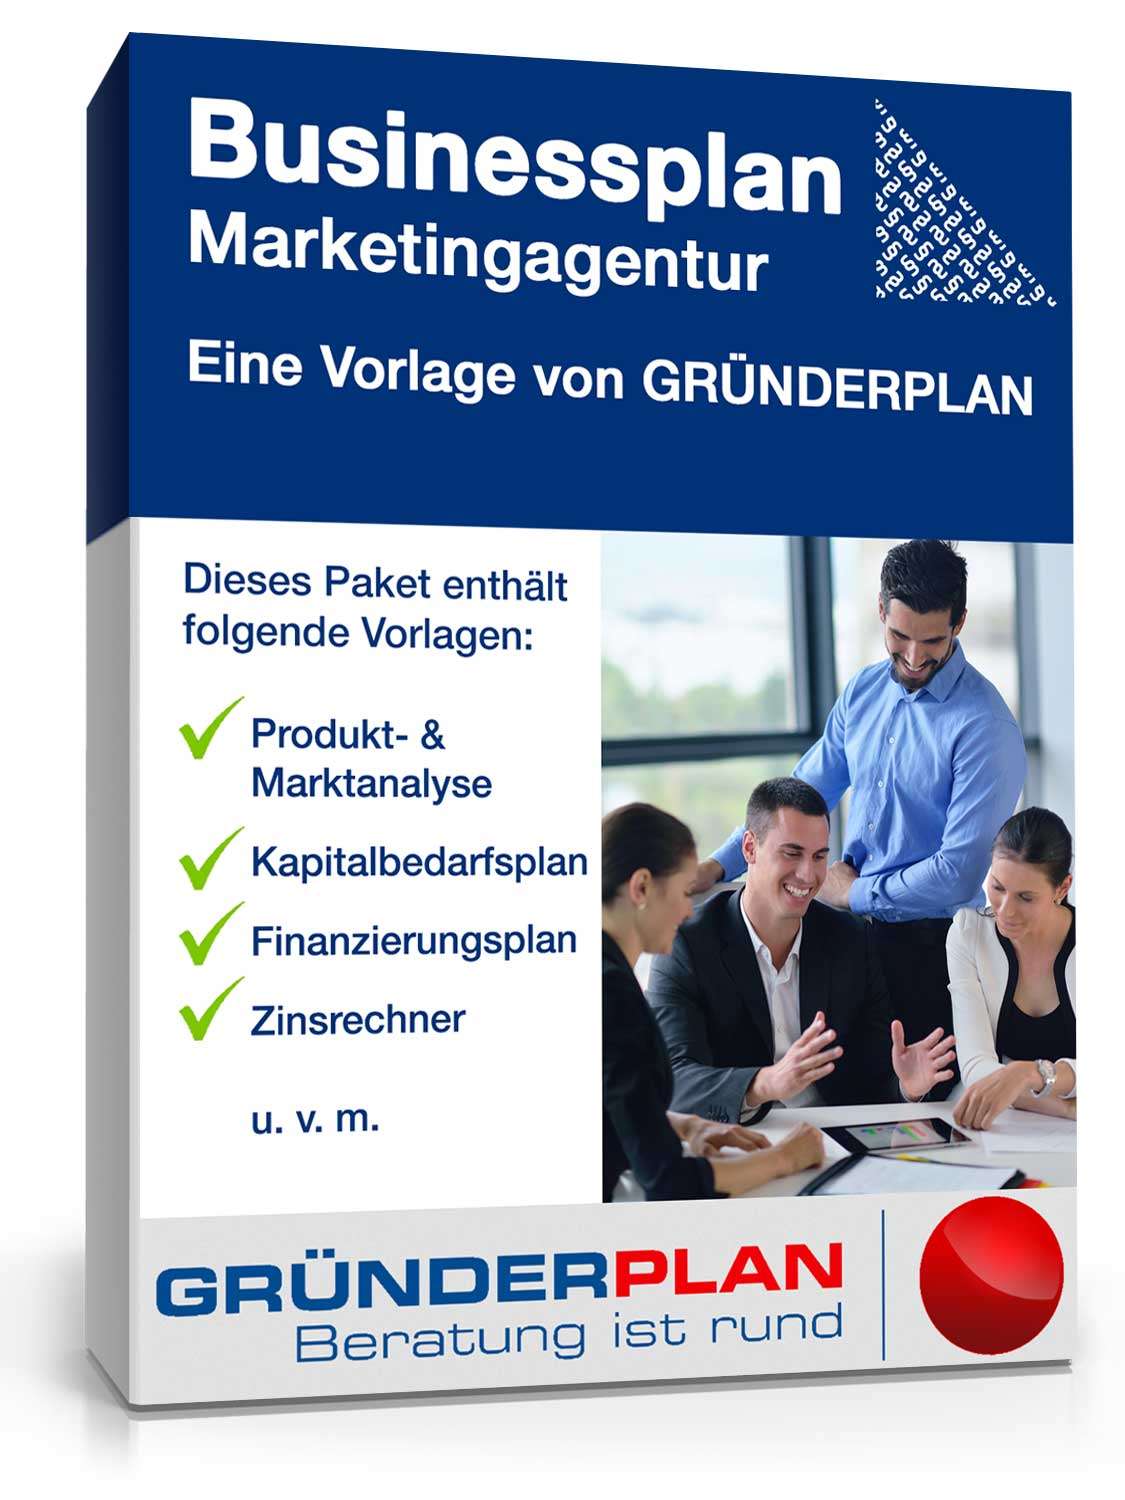 Hauptbild des Produkts: Businessplan Marketingagentur von Gründerplan